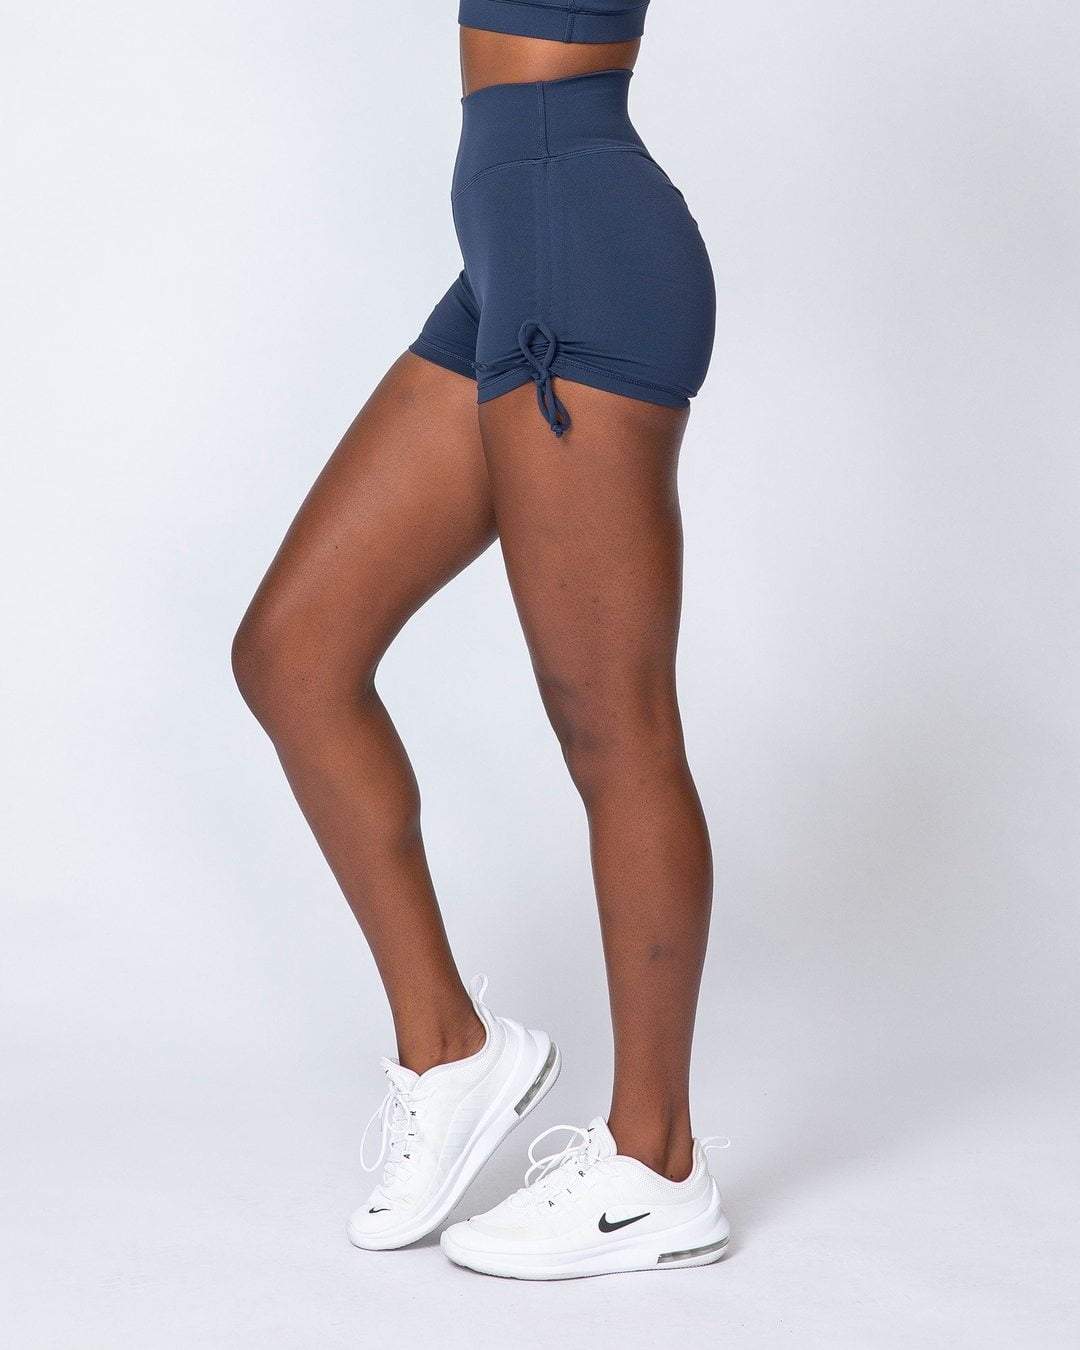 musclenation Tie Up High Waist Scrunch Shorts - Navy Blue